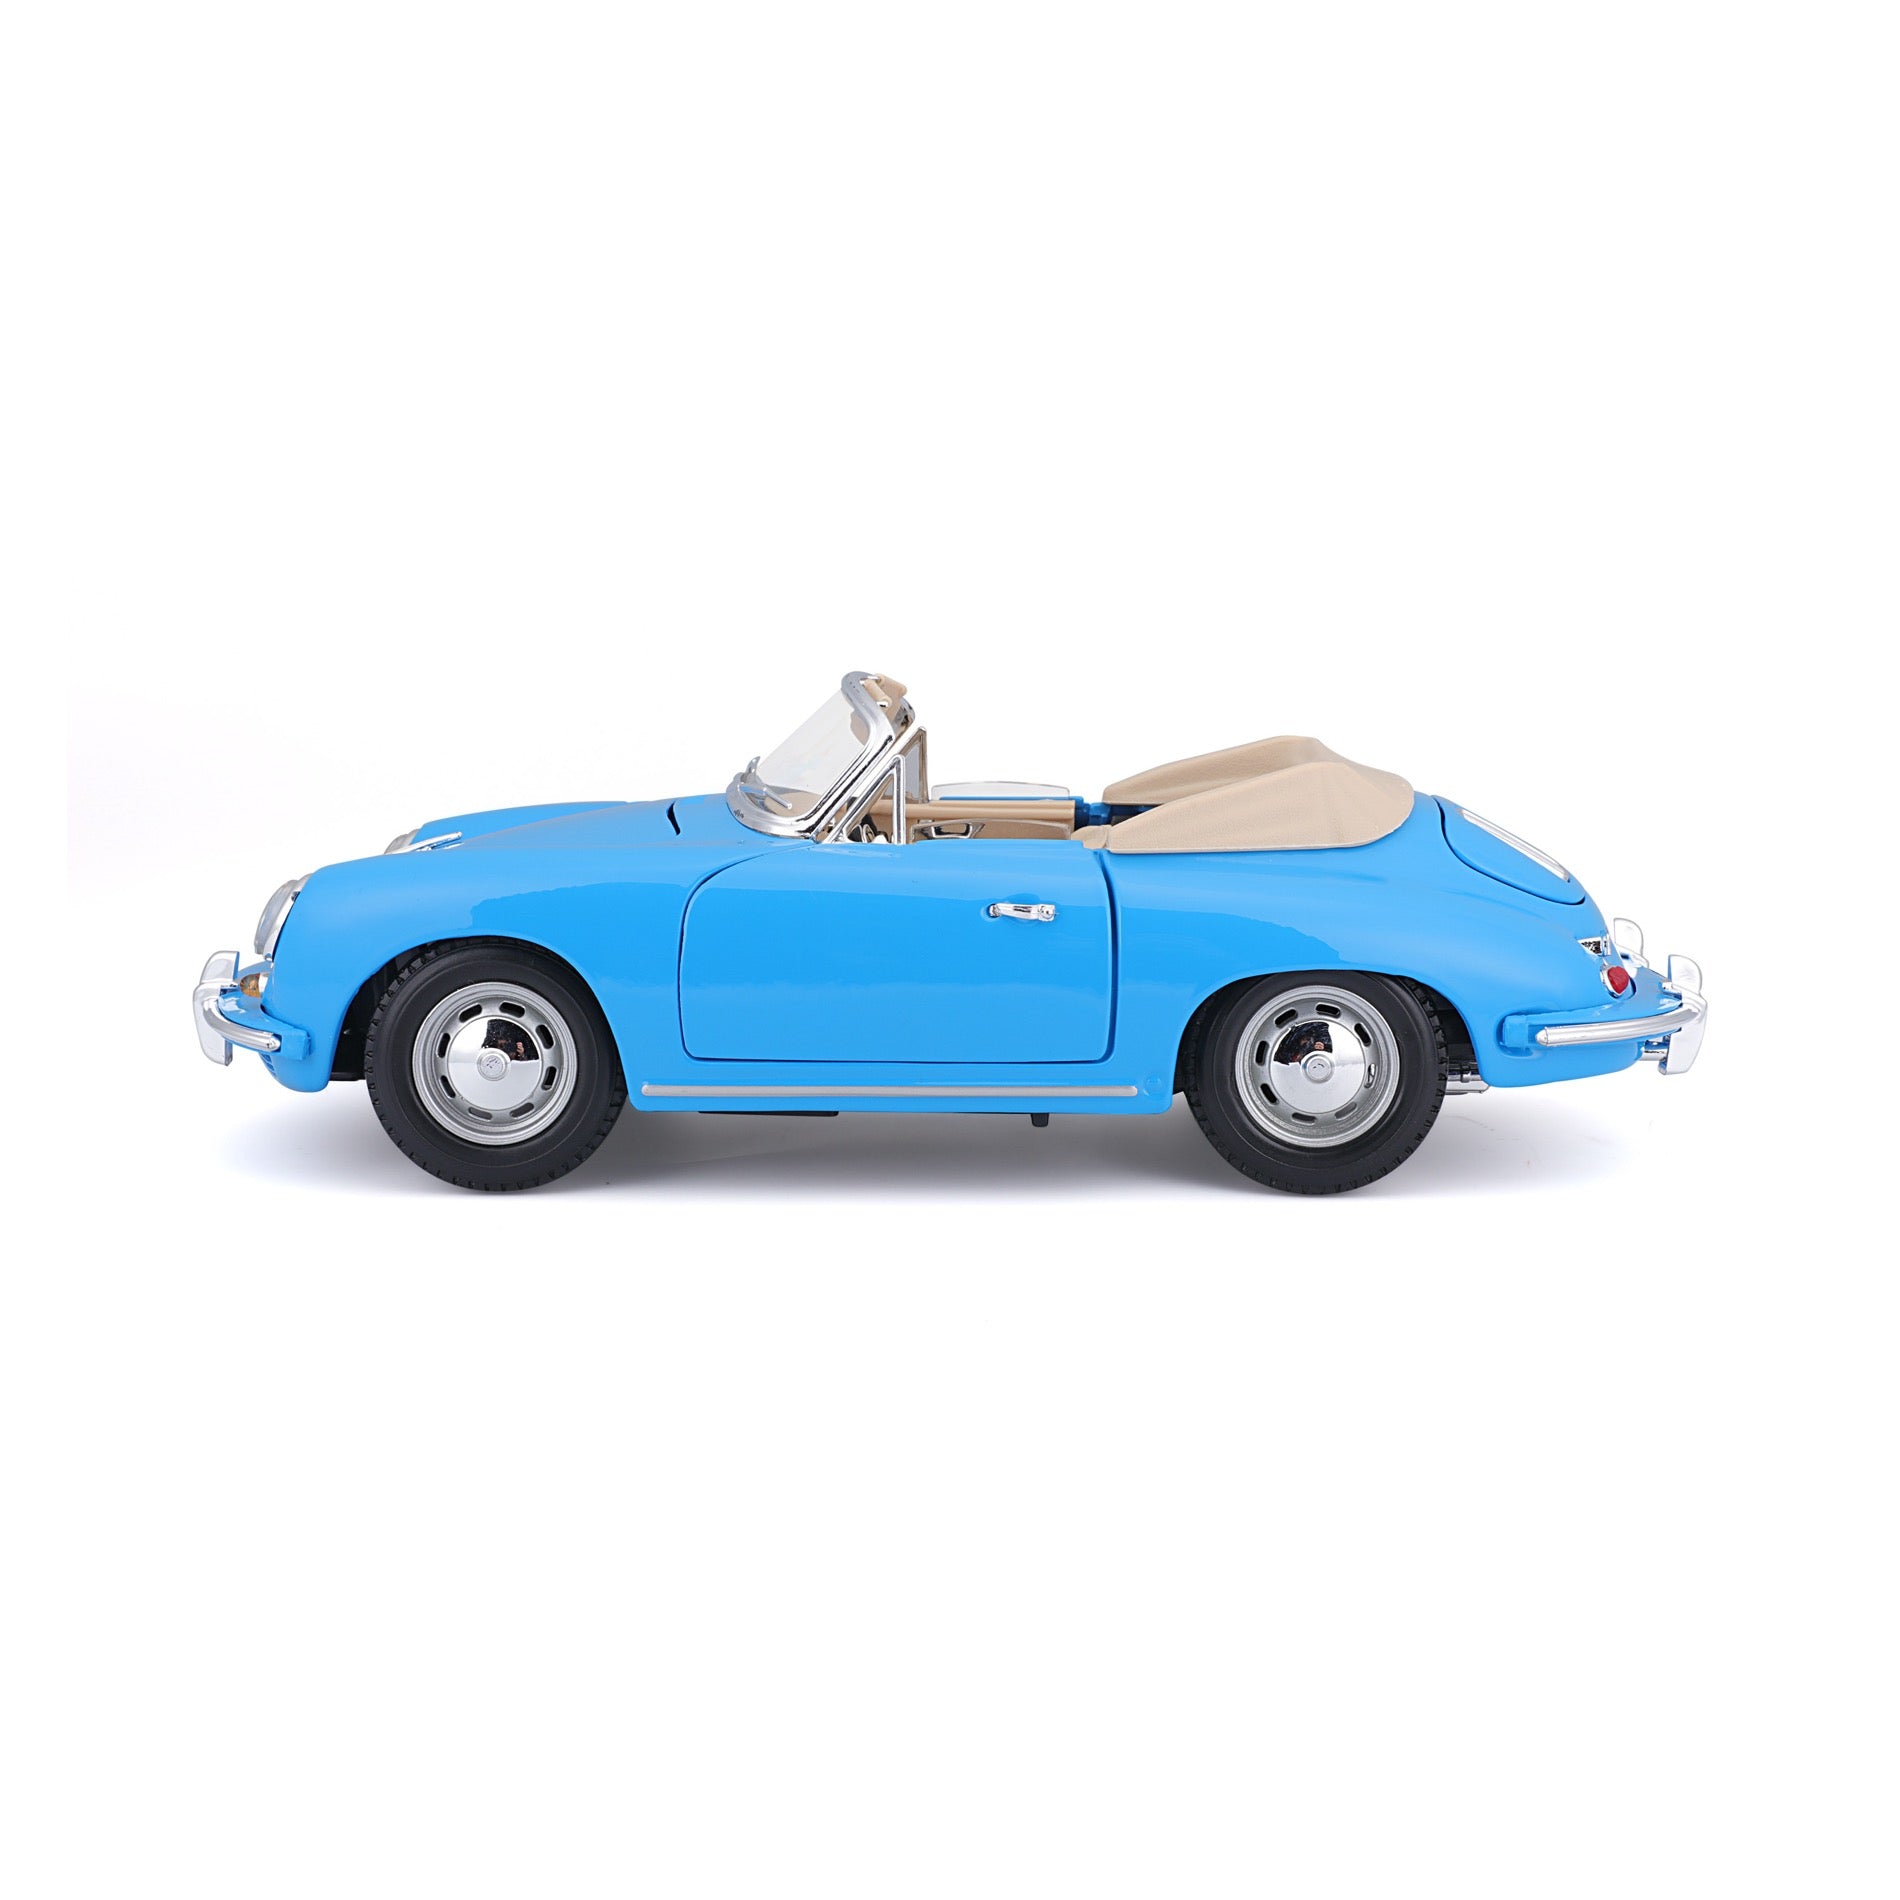 18-12025 Bburago - Porsche 356B Cabriolet (1961) Blue - 1:18